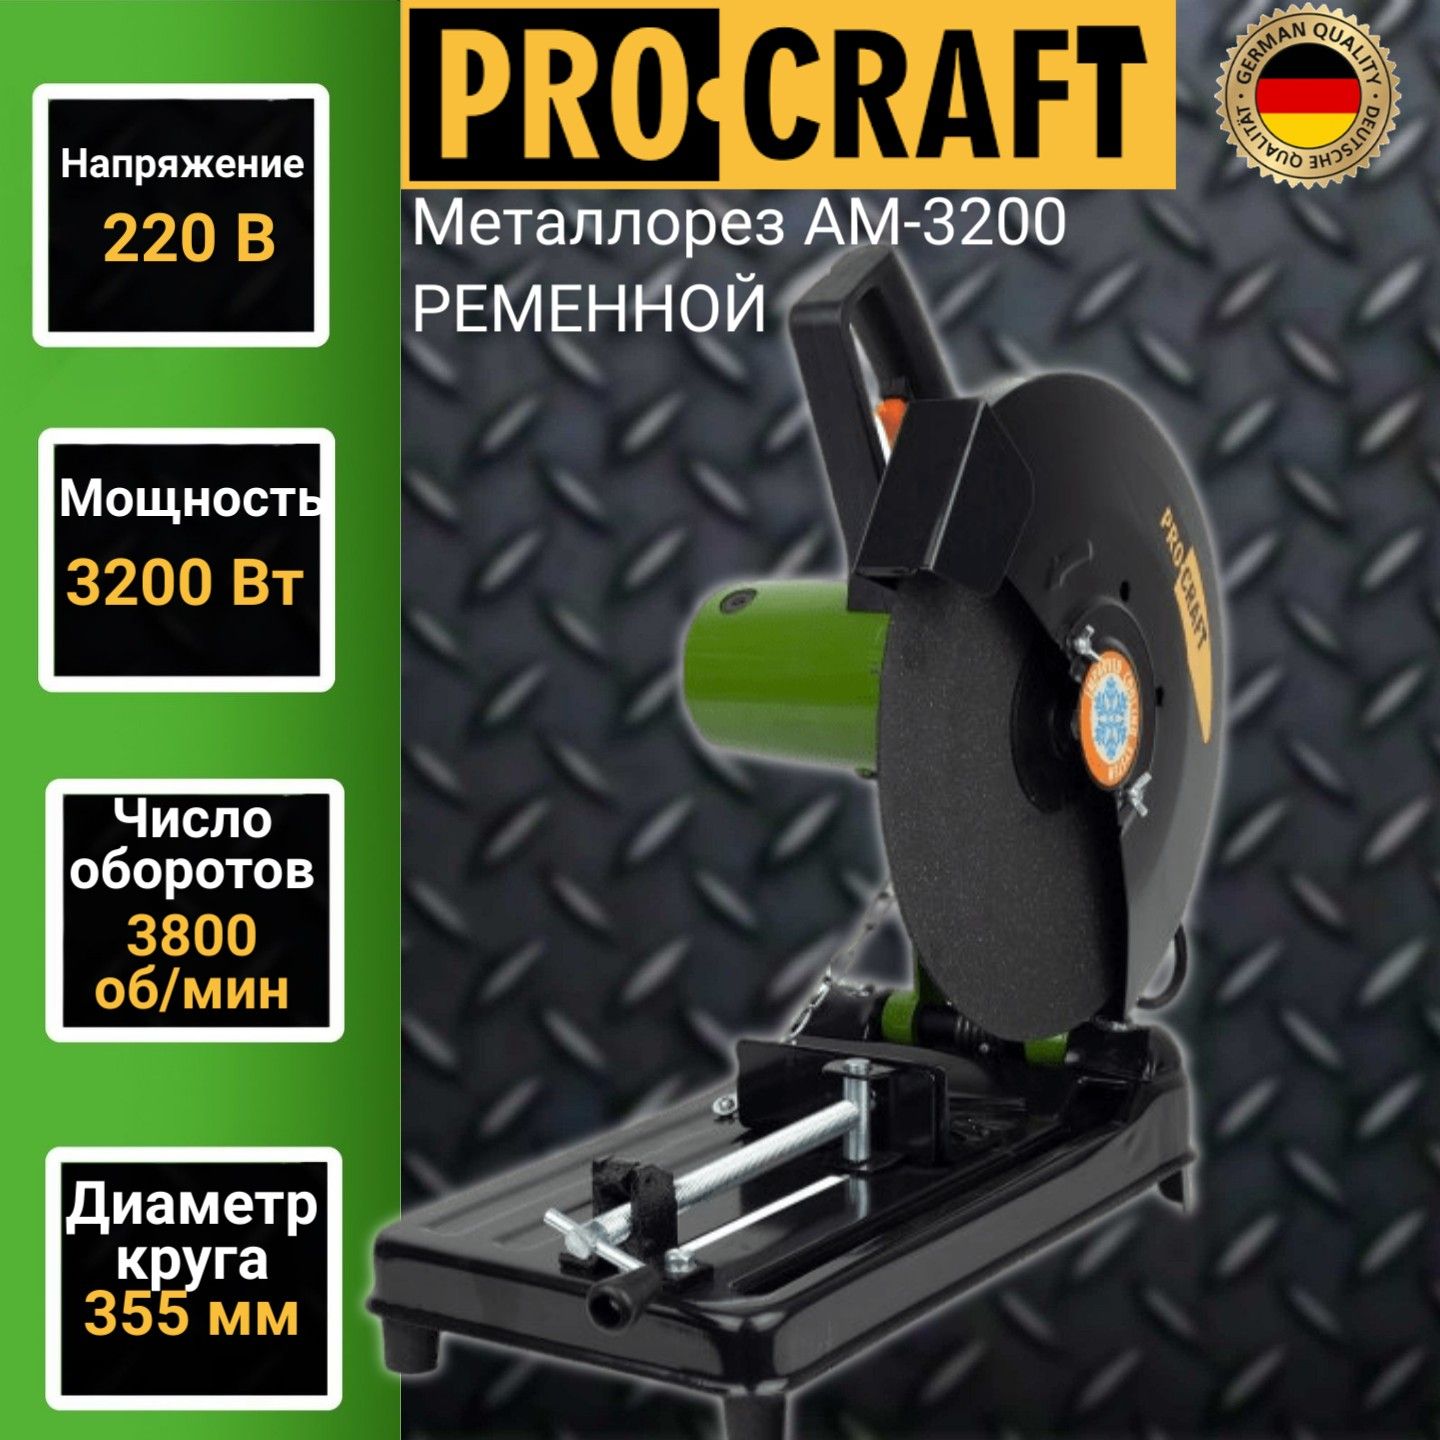 Пила монтажная Procraft AM 3200 под абразивный диск 305/355мм, 3200Вт, 3800об/мин